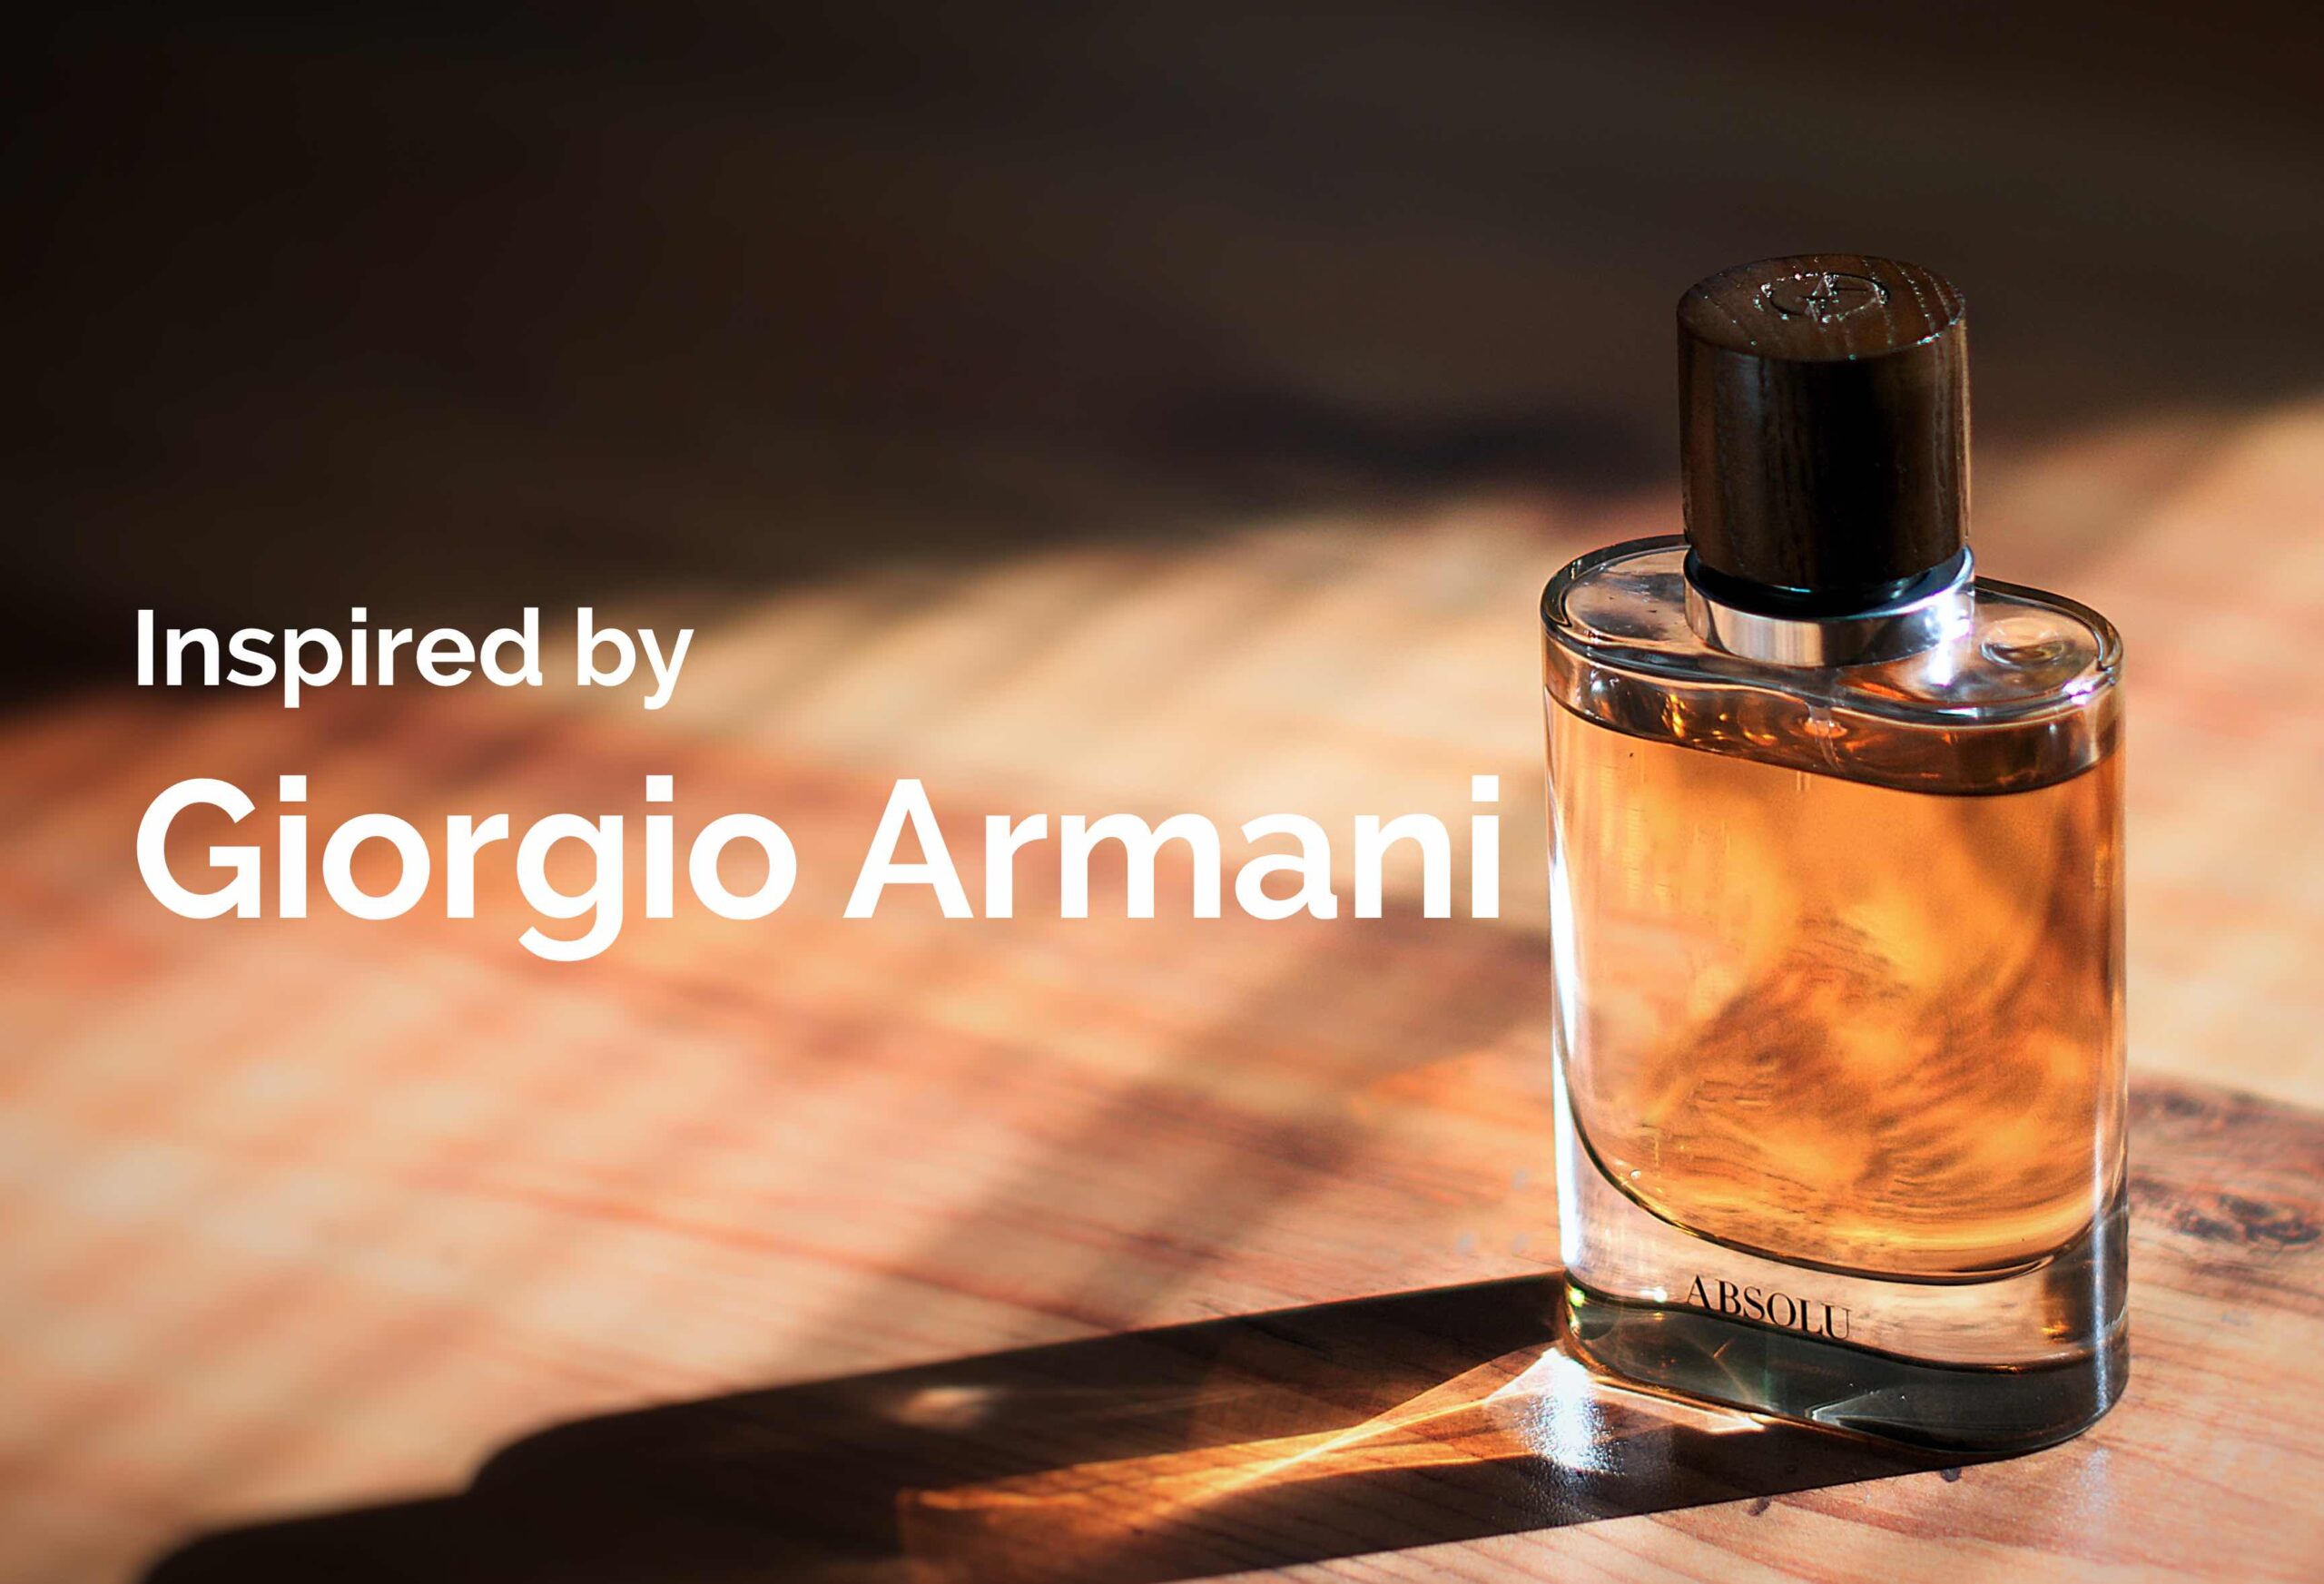 giorgio-armani-inspired-perfumes